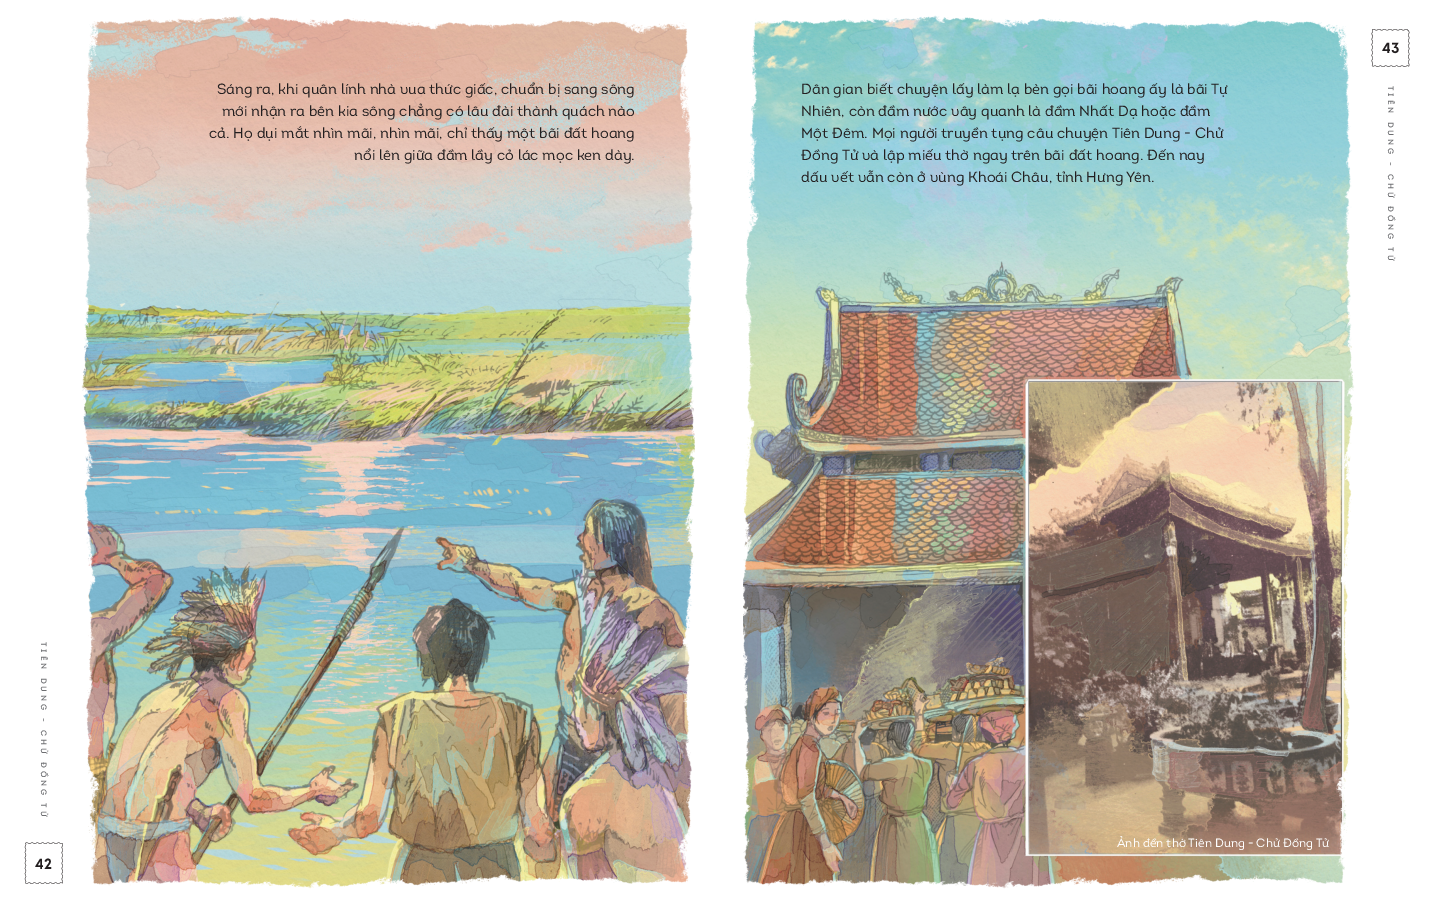  Lịch sử Việt Nam bằng tranh: Sơn Tinh - Thủy Tinh (Bản màu, bìa mềm) 